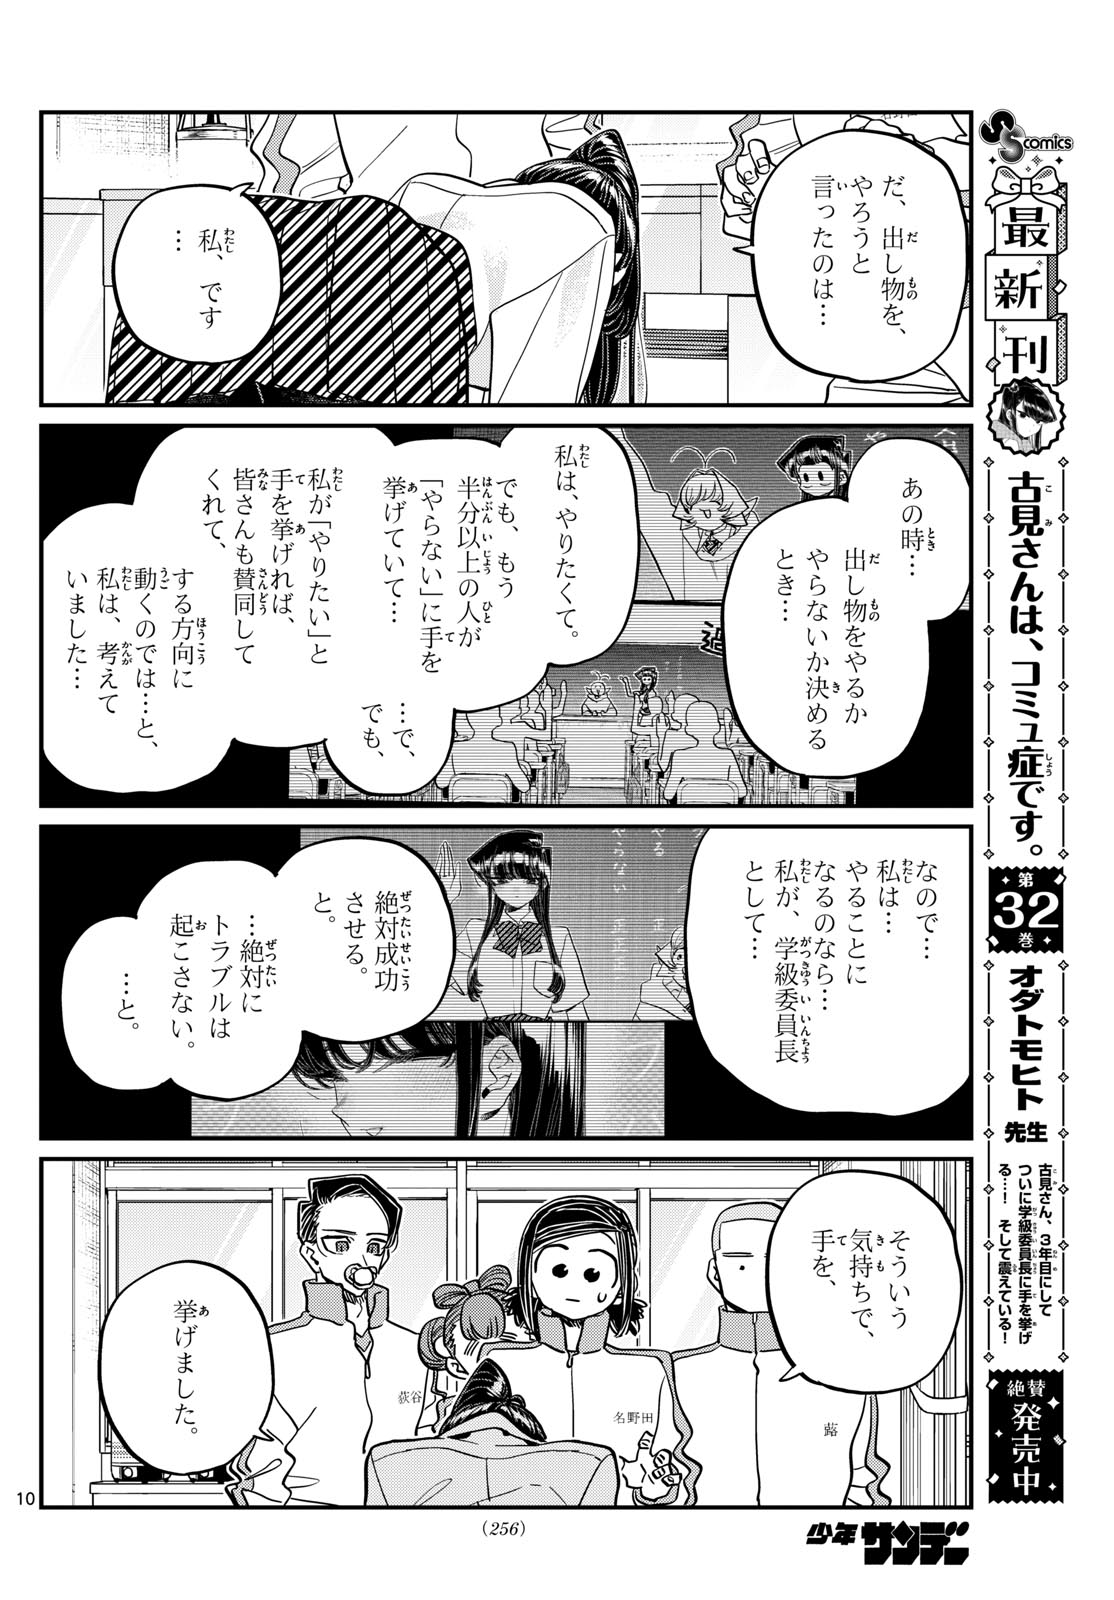 Komi-san wa Komyushou Desu - Chapter 449 - Page 10